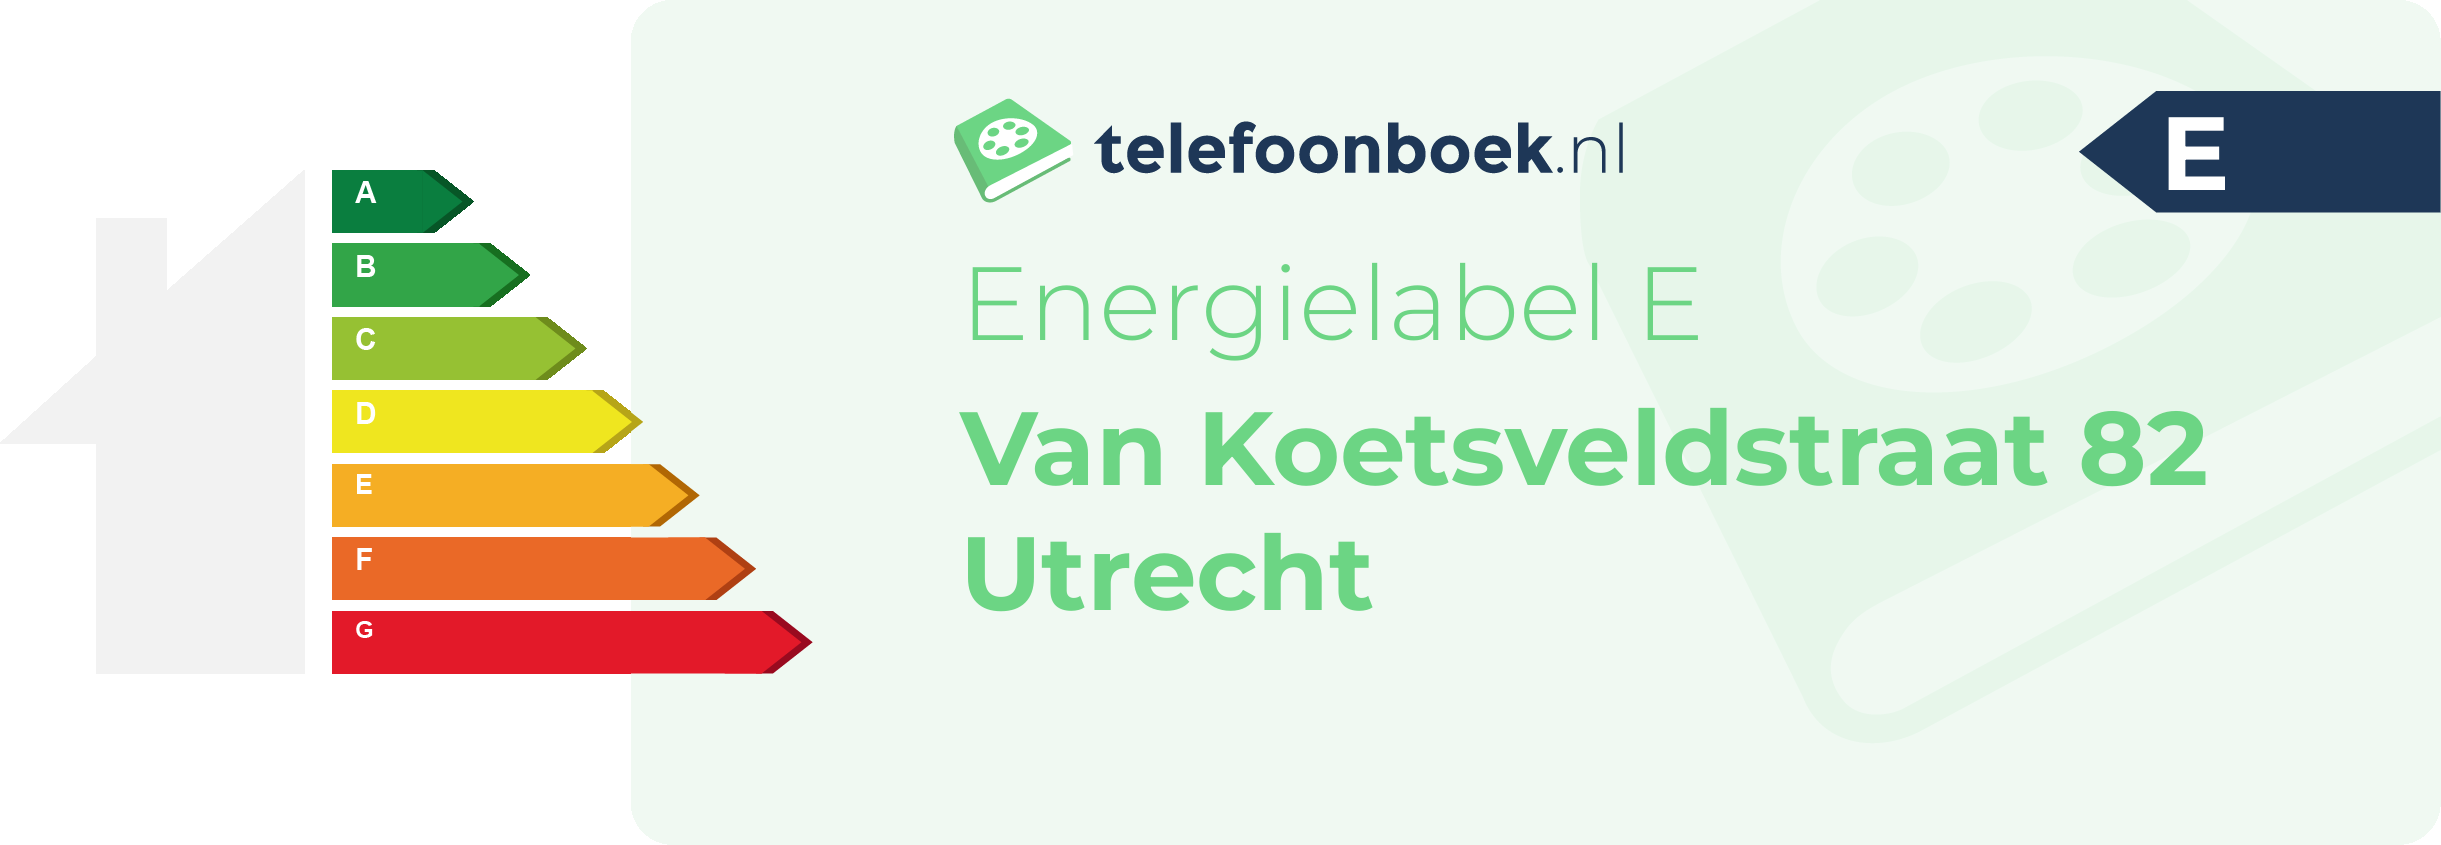 Energielabel Van Koetsveldstraat 82 Utrecht